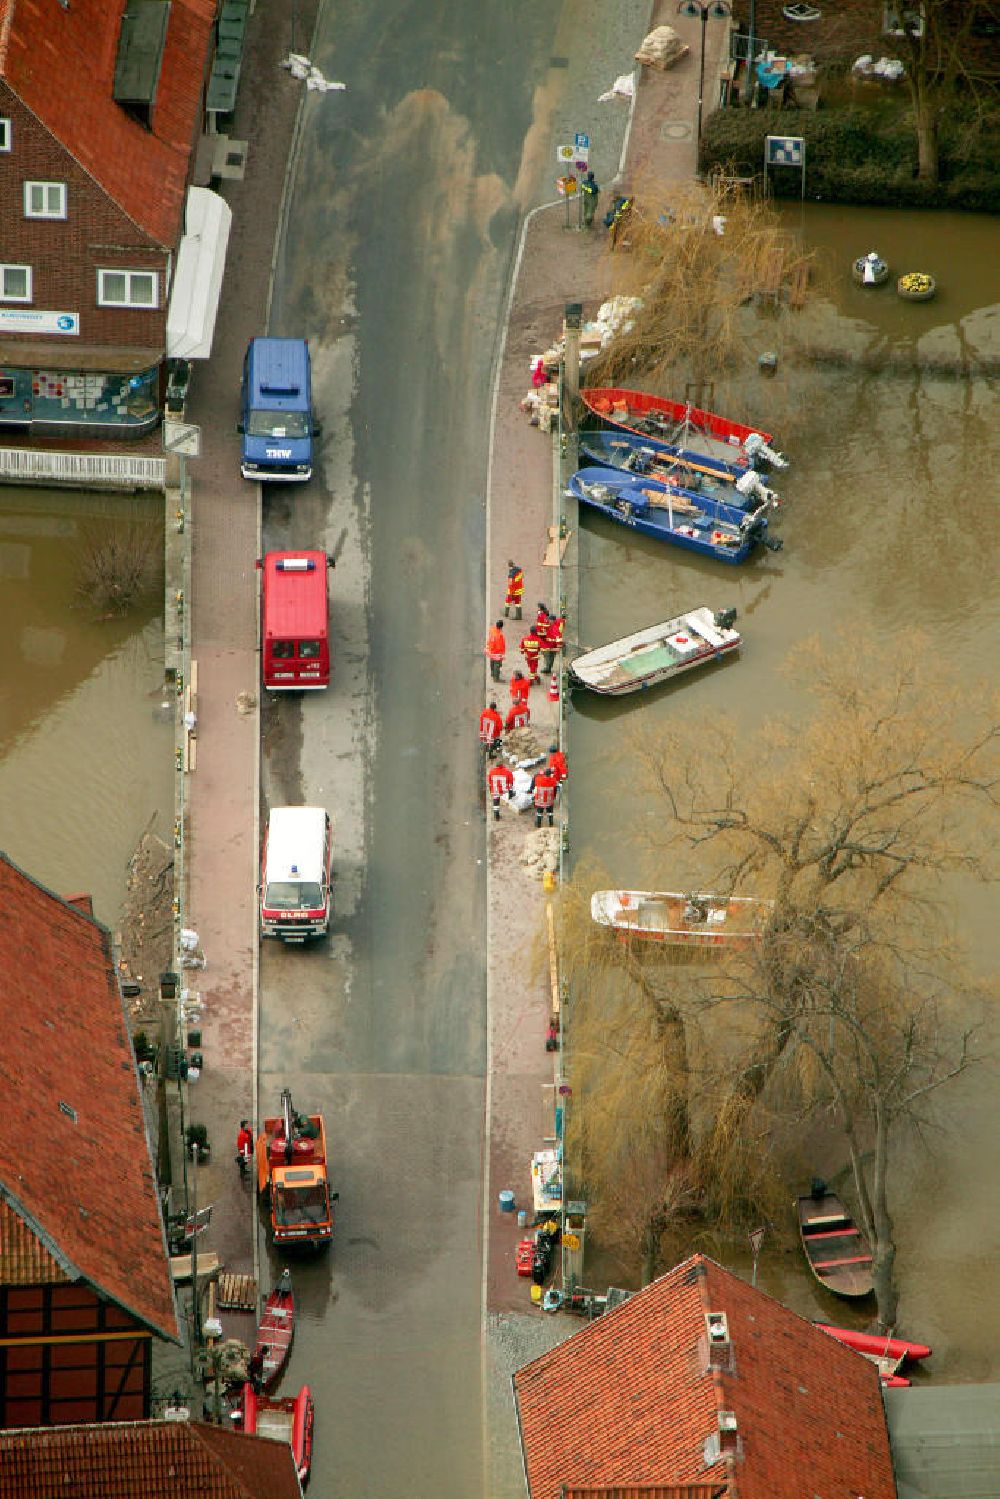 Aerial image Hitzacker - Blick auf das Elbe-Hochwasser bei Hitzacker. Die komplette Altstadt von Hitzacker wurde durch den Fluss überschwemmt. Rettungskräfte auf der Brücke Drawehnertorstraße.